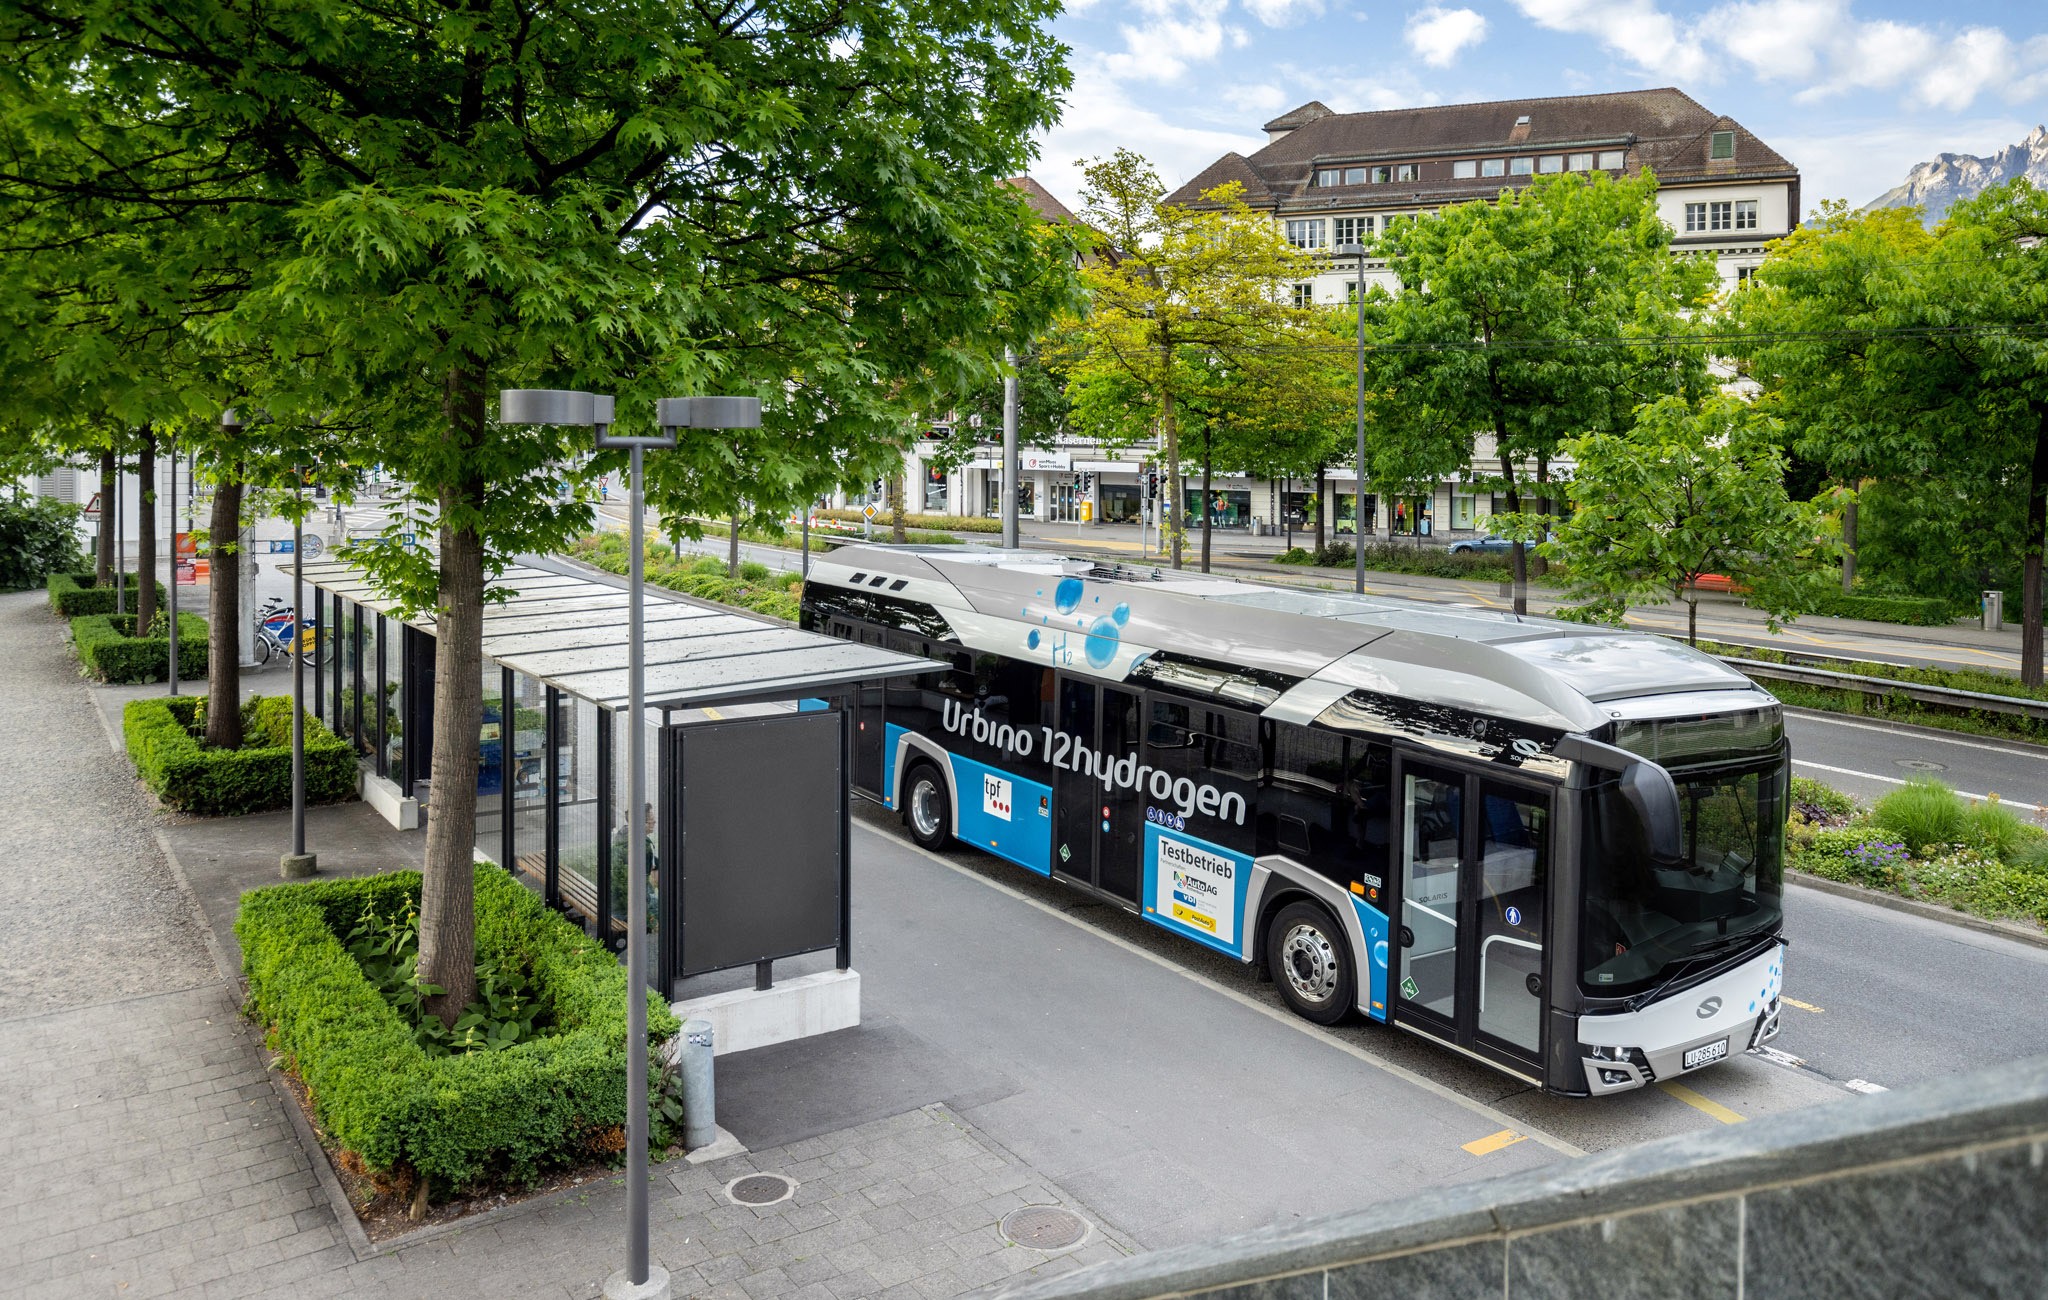 Solaris Bus & Coach und die Verkehrsbehörde Zarząd Transportu Miejskiego (ZTM) in Lublin haben einen Vertrag über den Kauf und die Lieferung eines Wasserstoffbusses Urbino 12 hydrogen unterschrieben. Nach der Auslieferung des Busses wird Lublin die zweite Stadt in Polen nach Konin sein, die Wasserstofflösungen in ihrer Flotte anwendet.